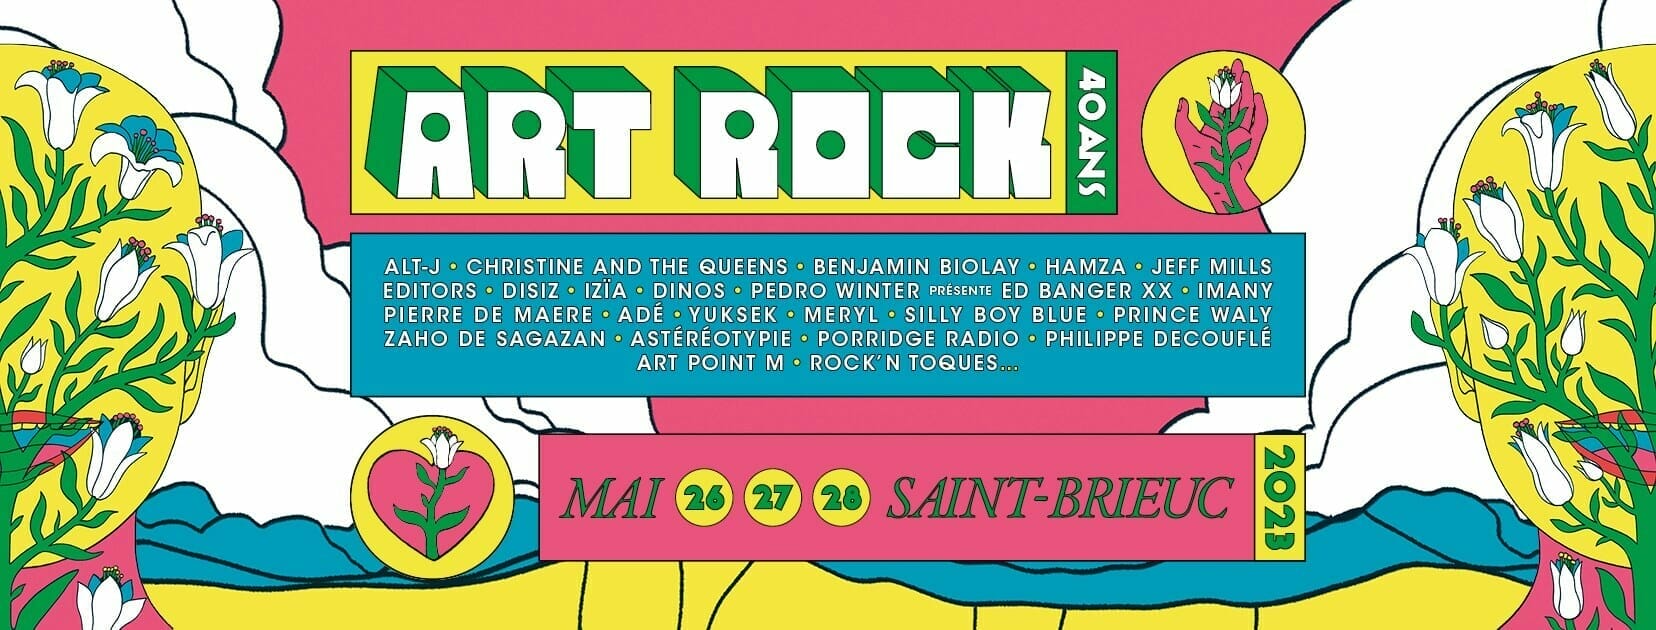 Festival Art Rock, les 26, 27 et 28 mai 2023 à Saint-Brieuc (22)